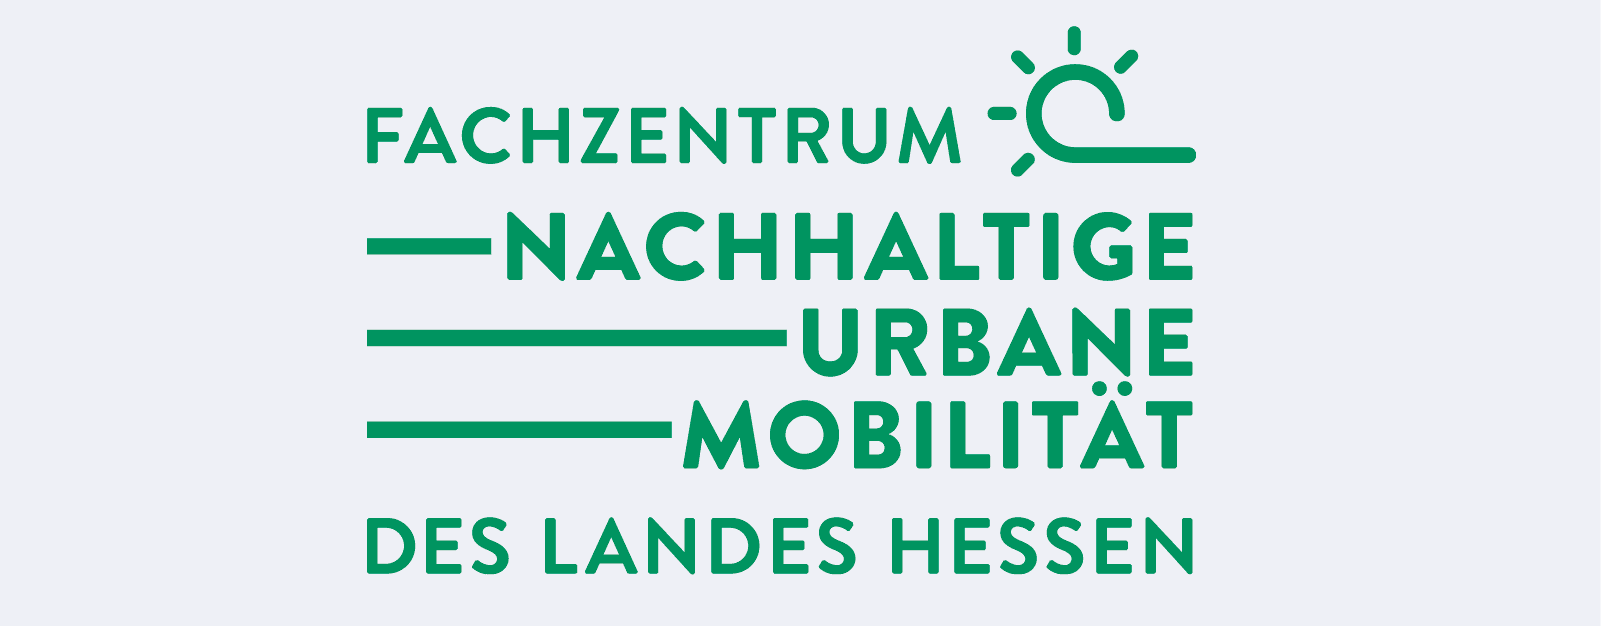 Nachhaltige Urbane Mobilität (FZ-NUM)